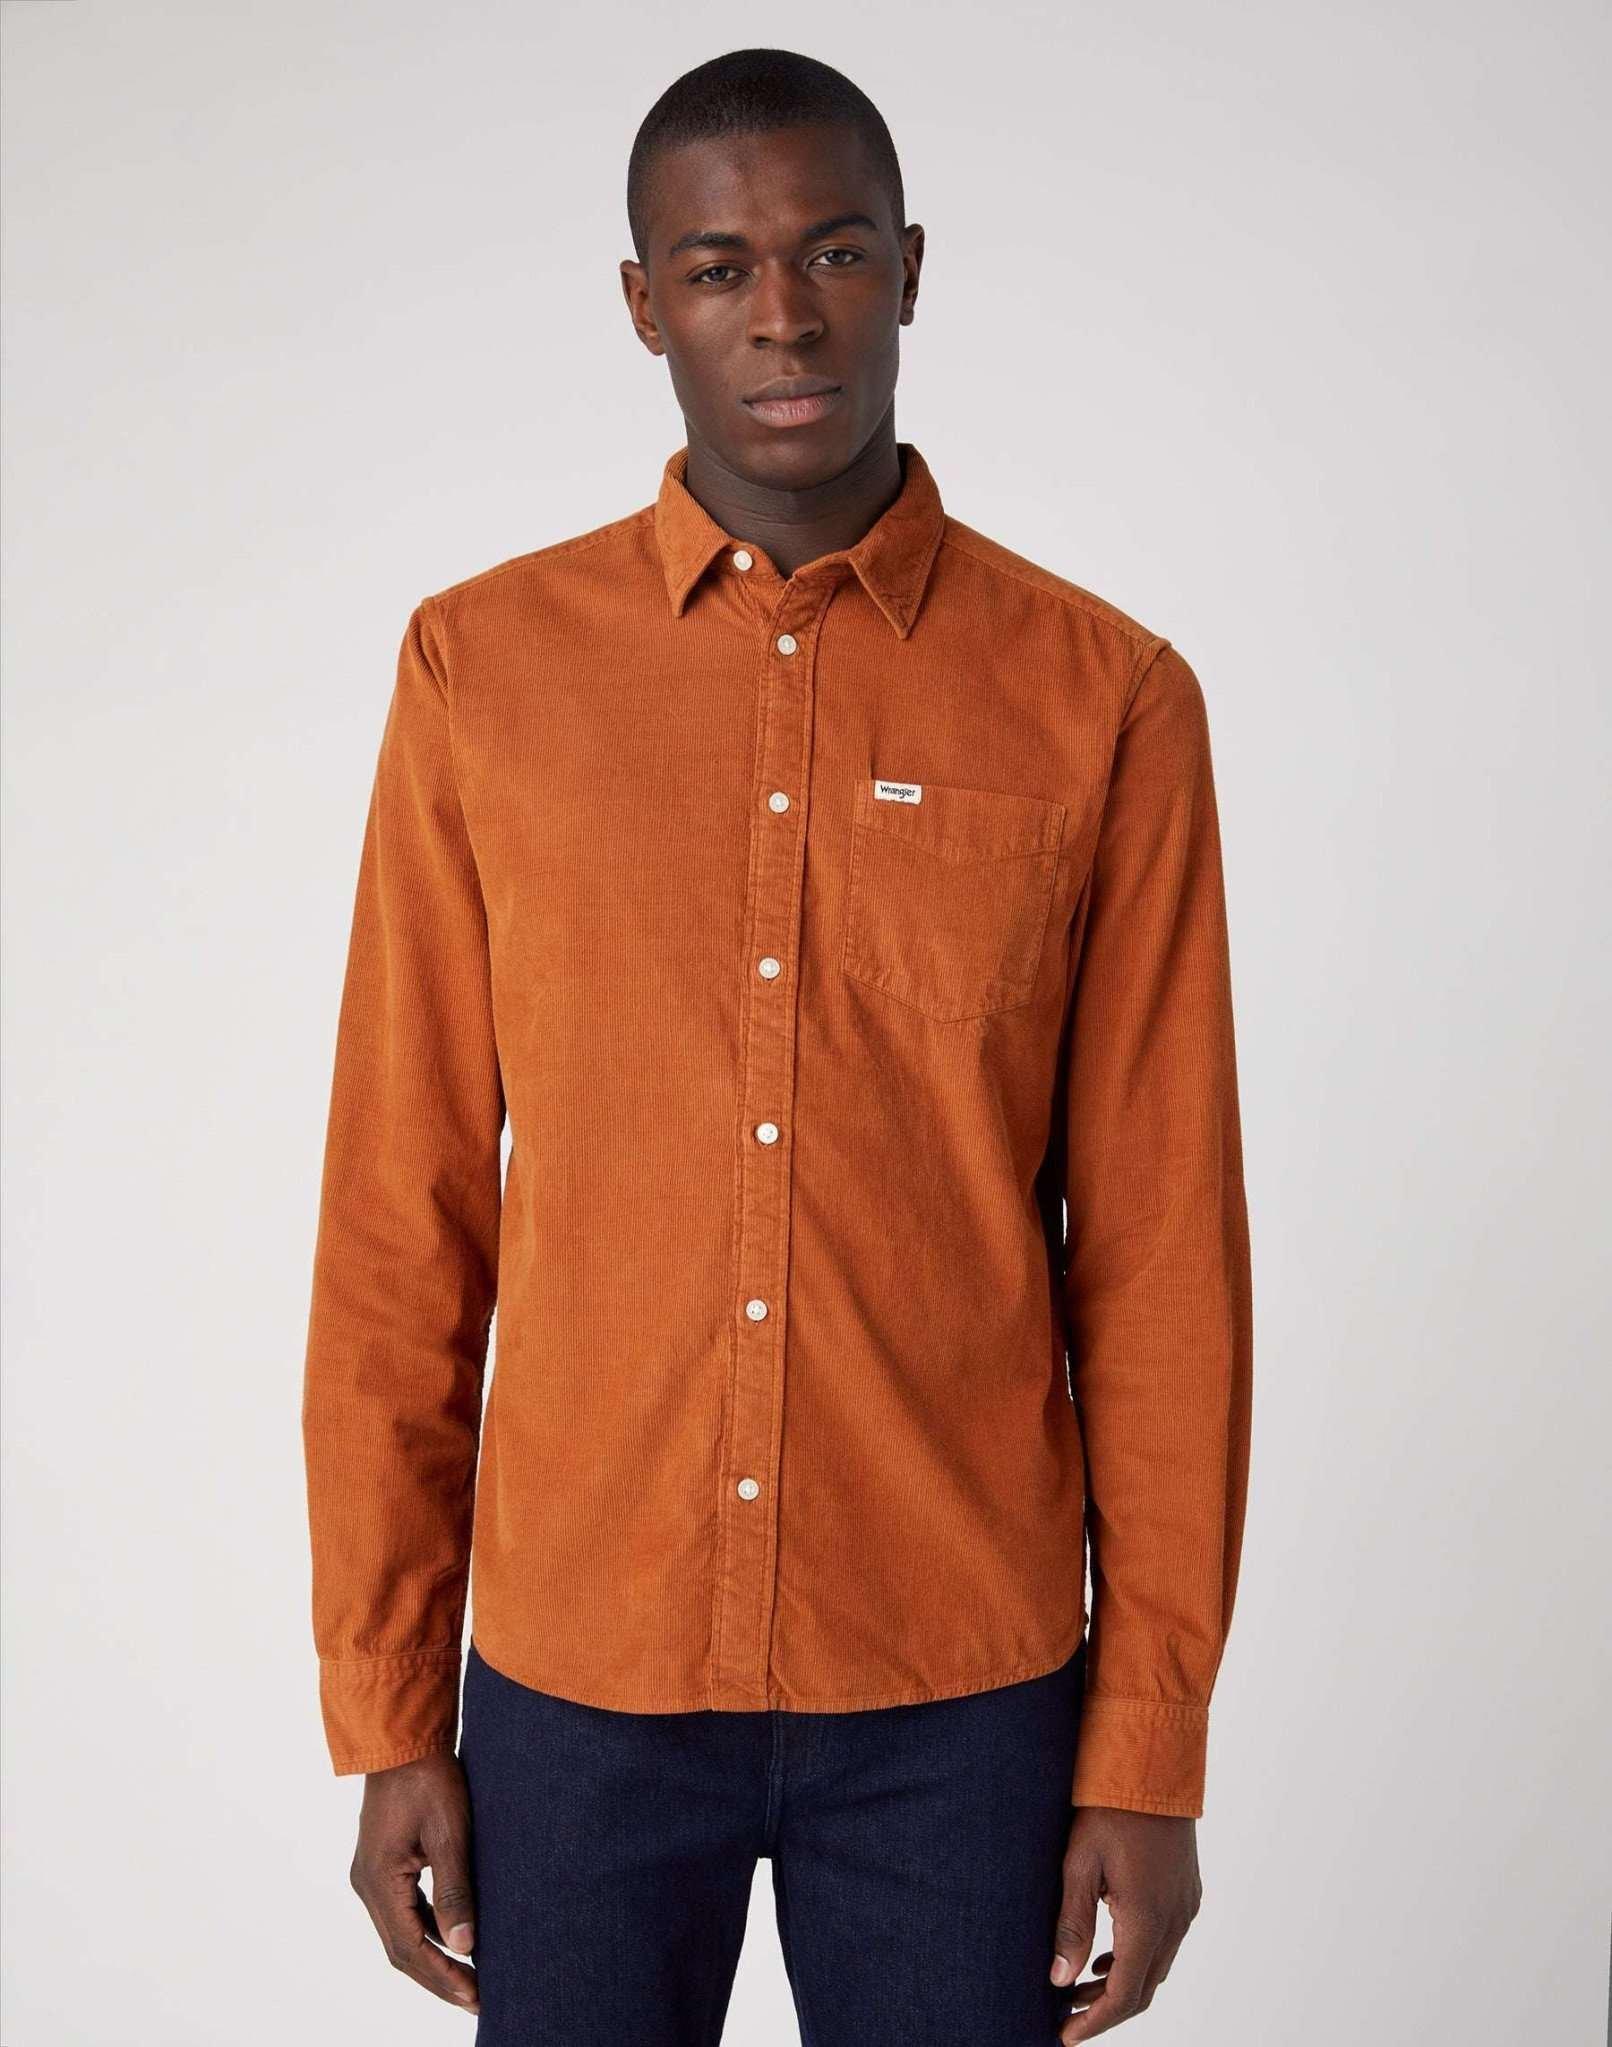 Hemden One Pocket Shirt Herren Braun XL von Wrangler